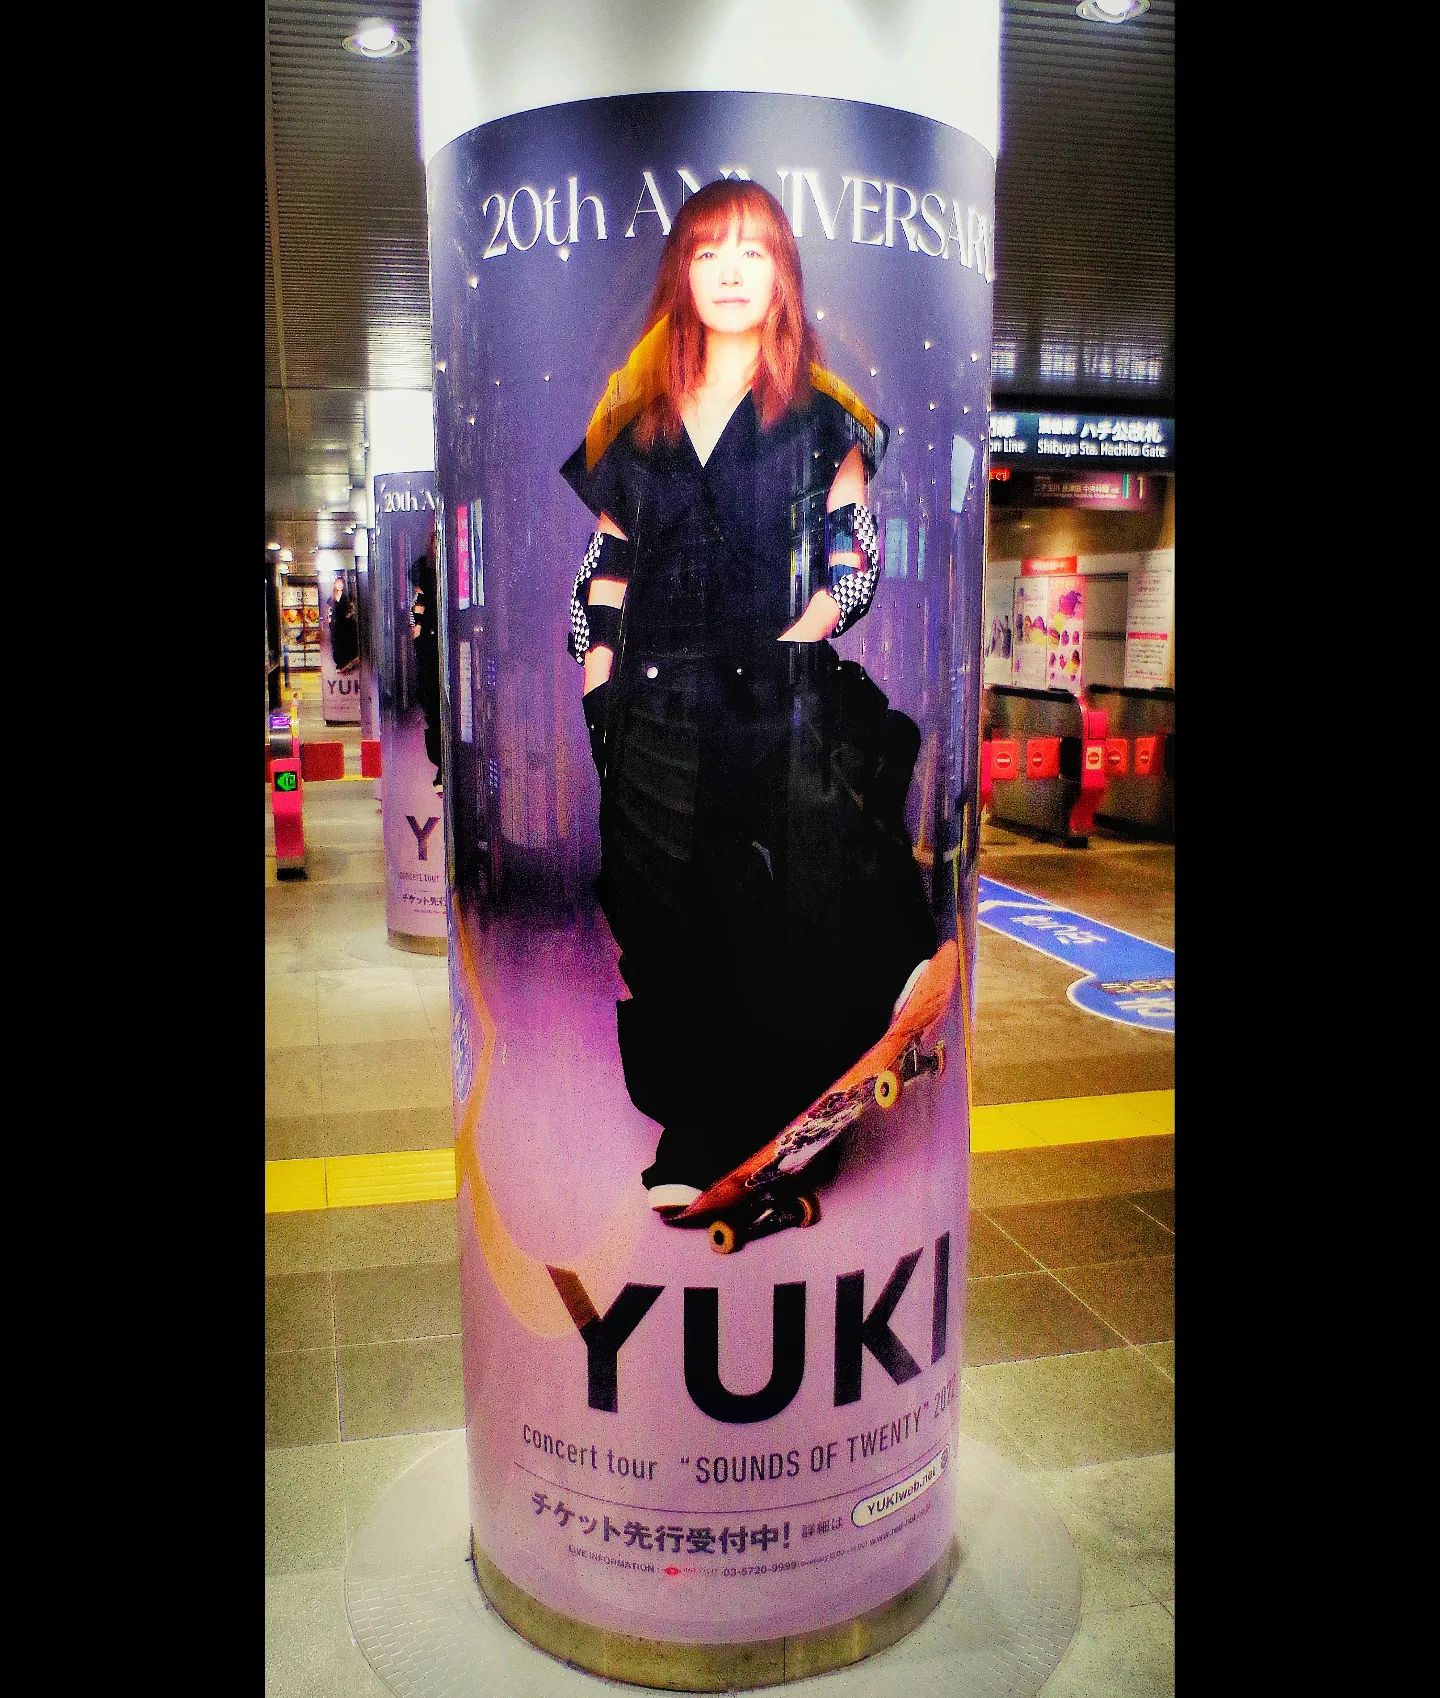 #yuki#20thanniversary tourYUKI concert tour “SOUNDS OF TWENTY” 2022#渋谷駅 #shibuyastation #広告